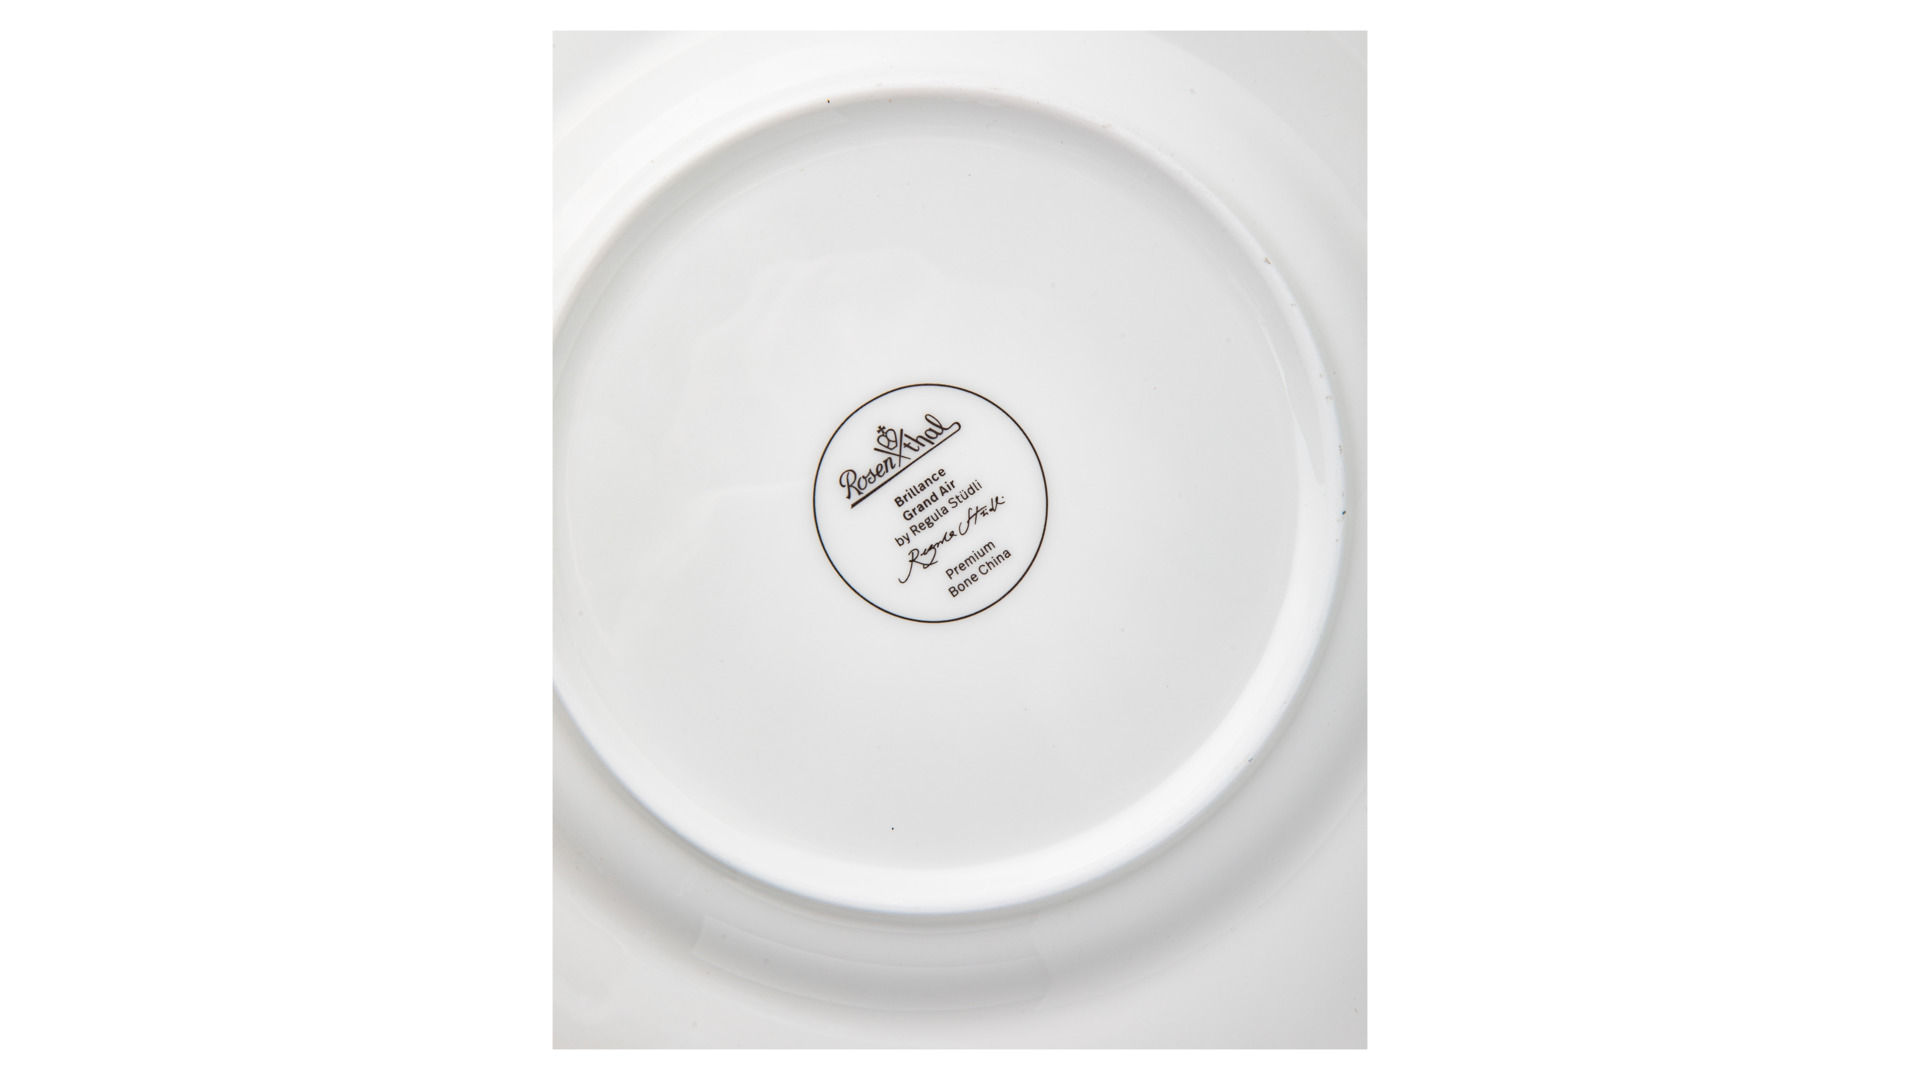 Тарелка закусочная Rosenthal Горный воздух 23 см, фарфор костяной